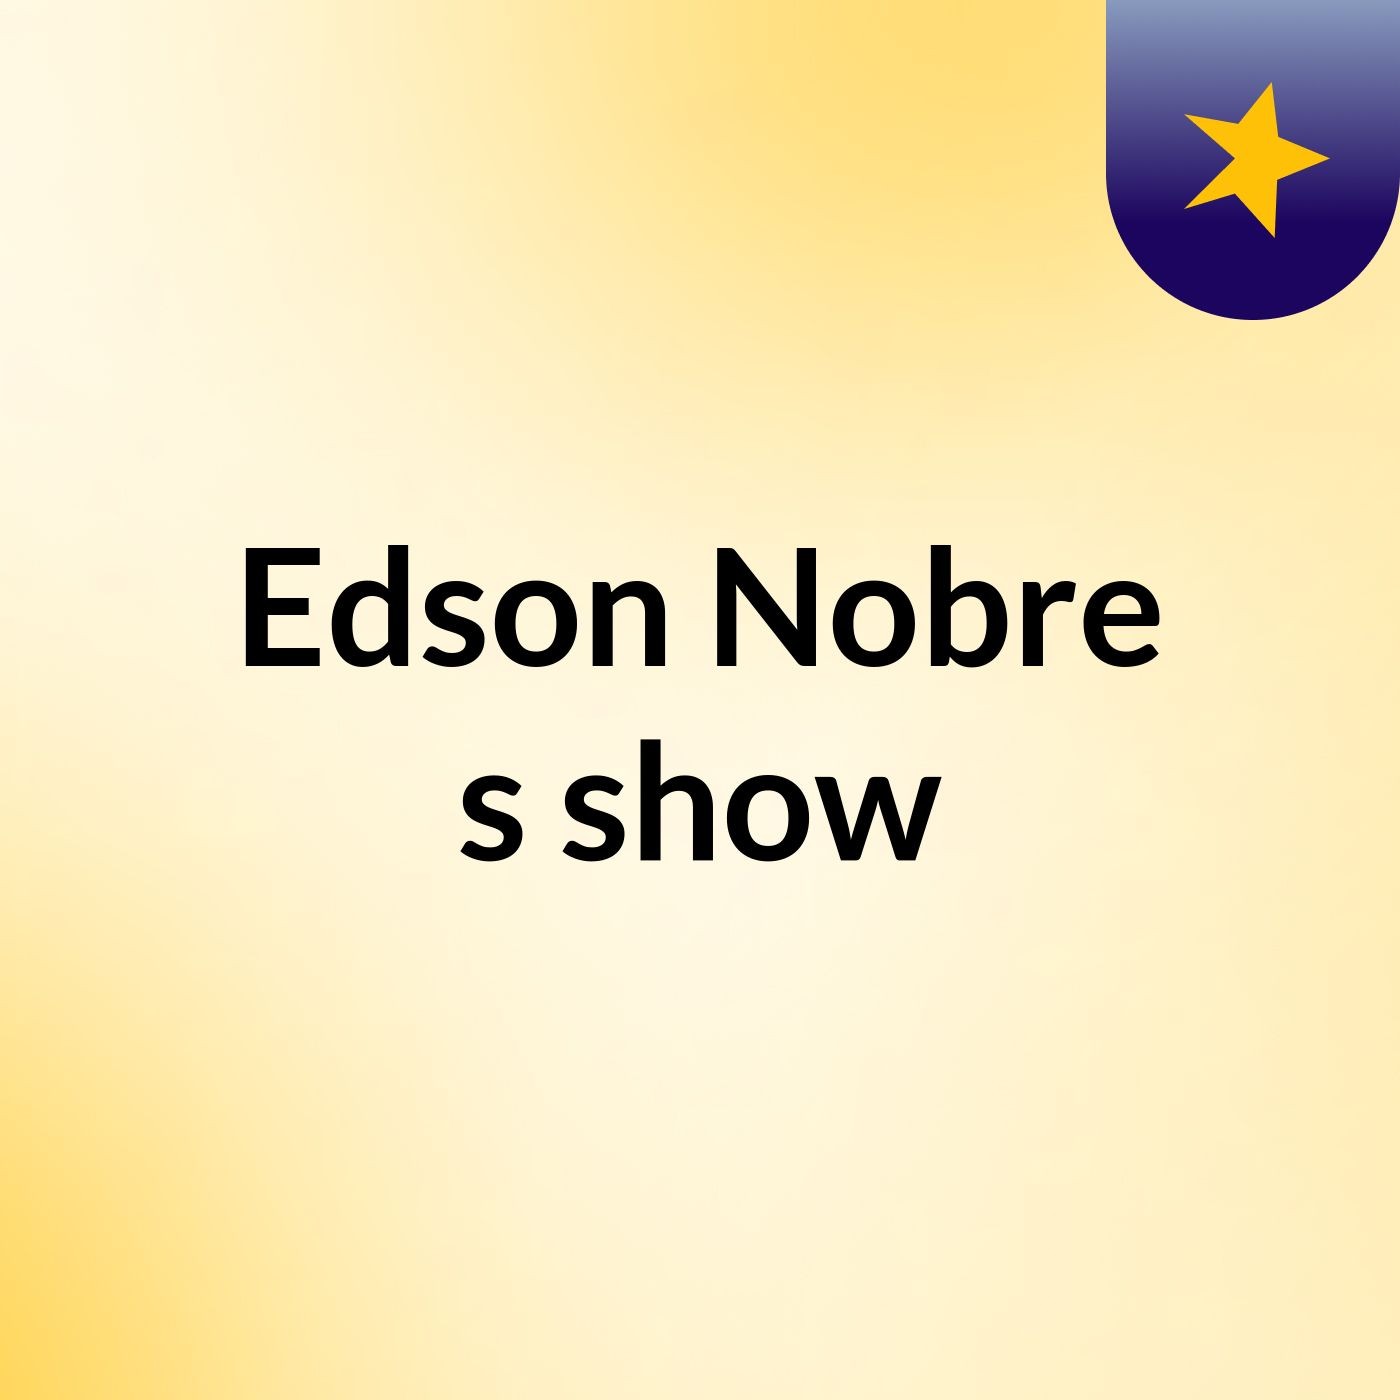 Edson Nobre's show